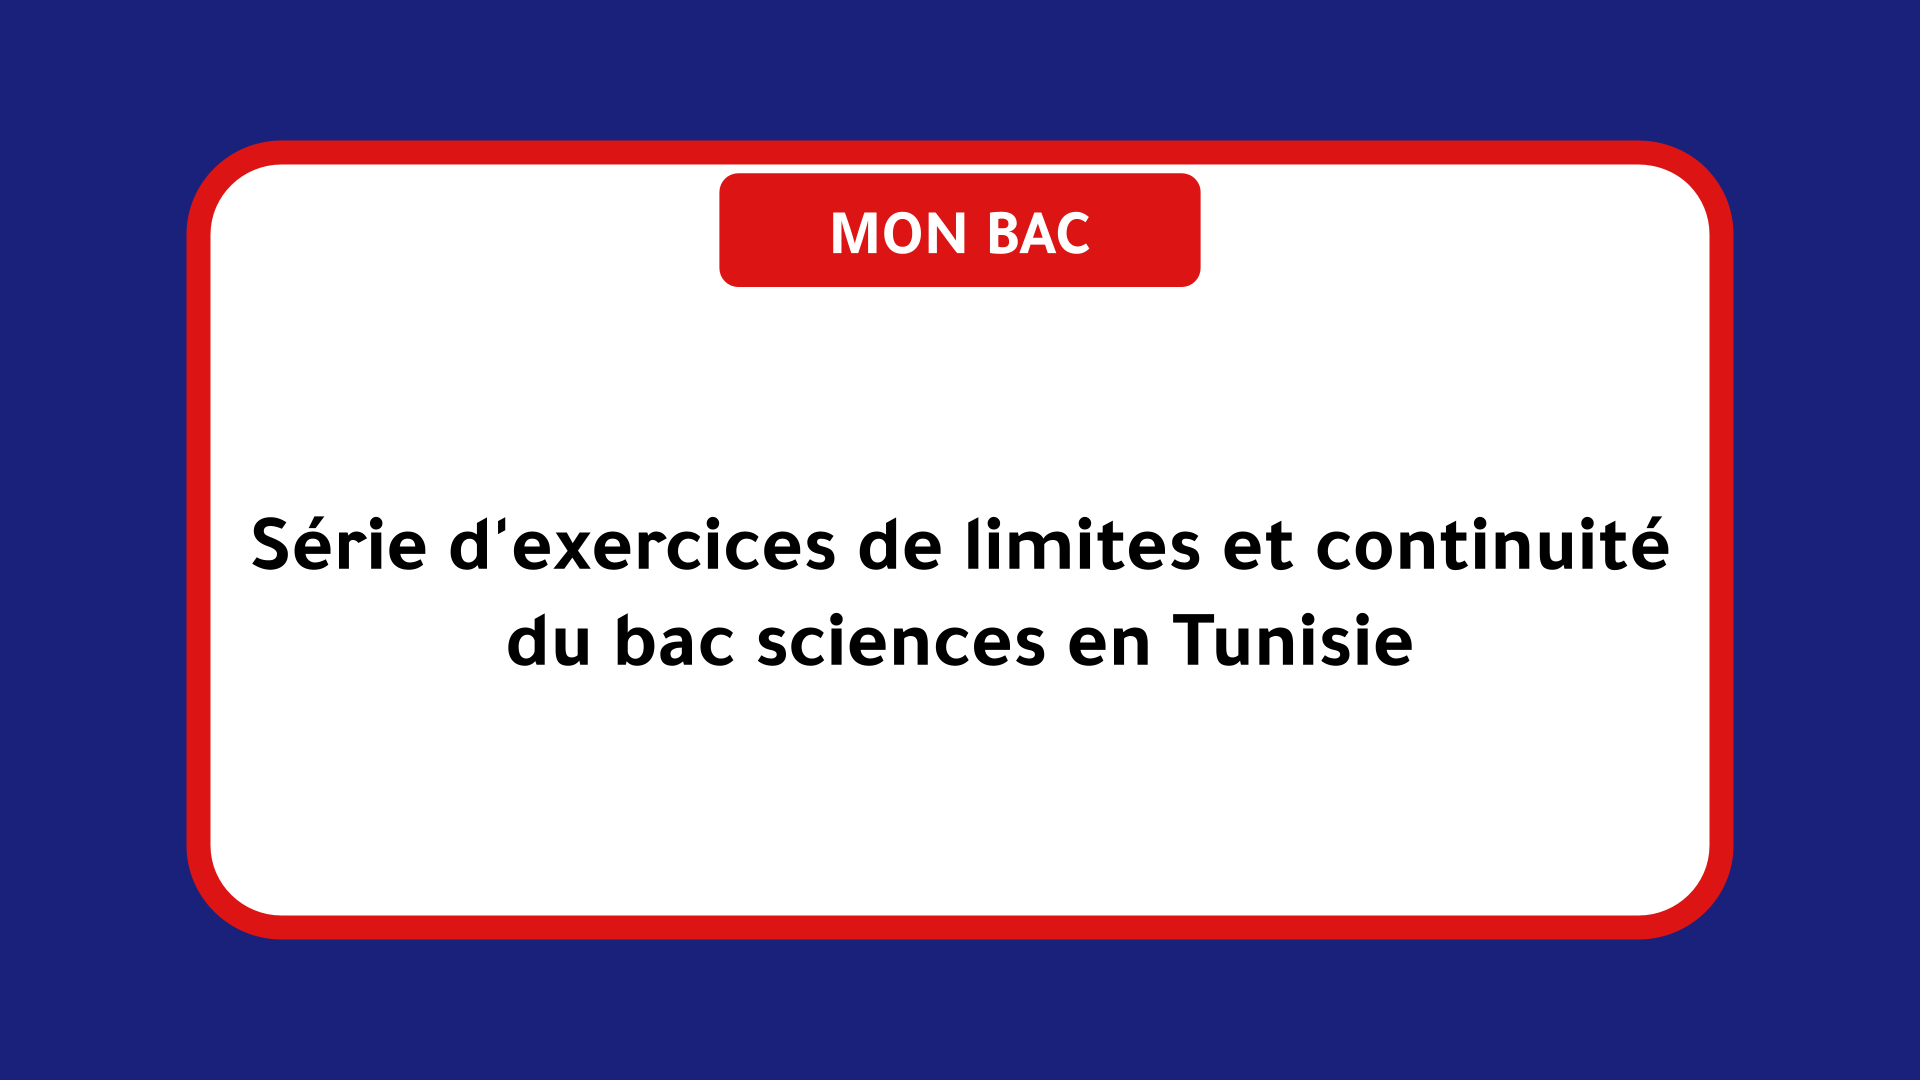 Série d'exercices de limites et continuité bac sciences Tunisie